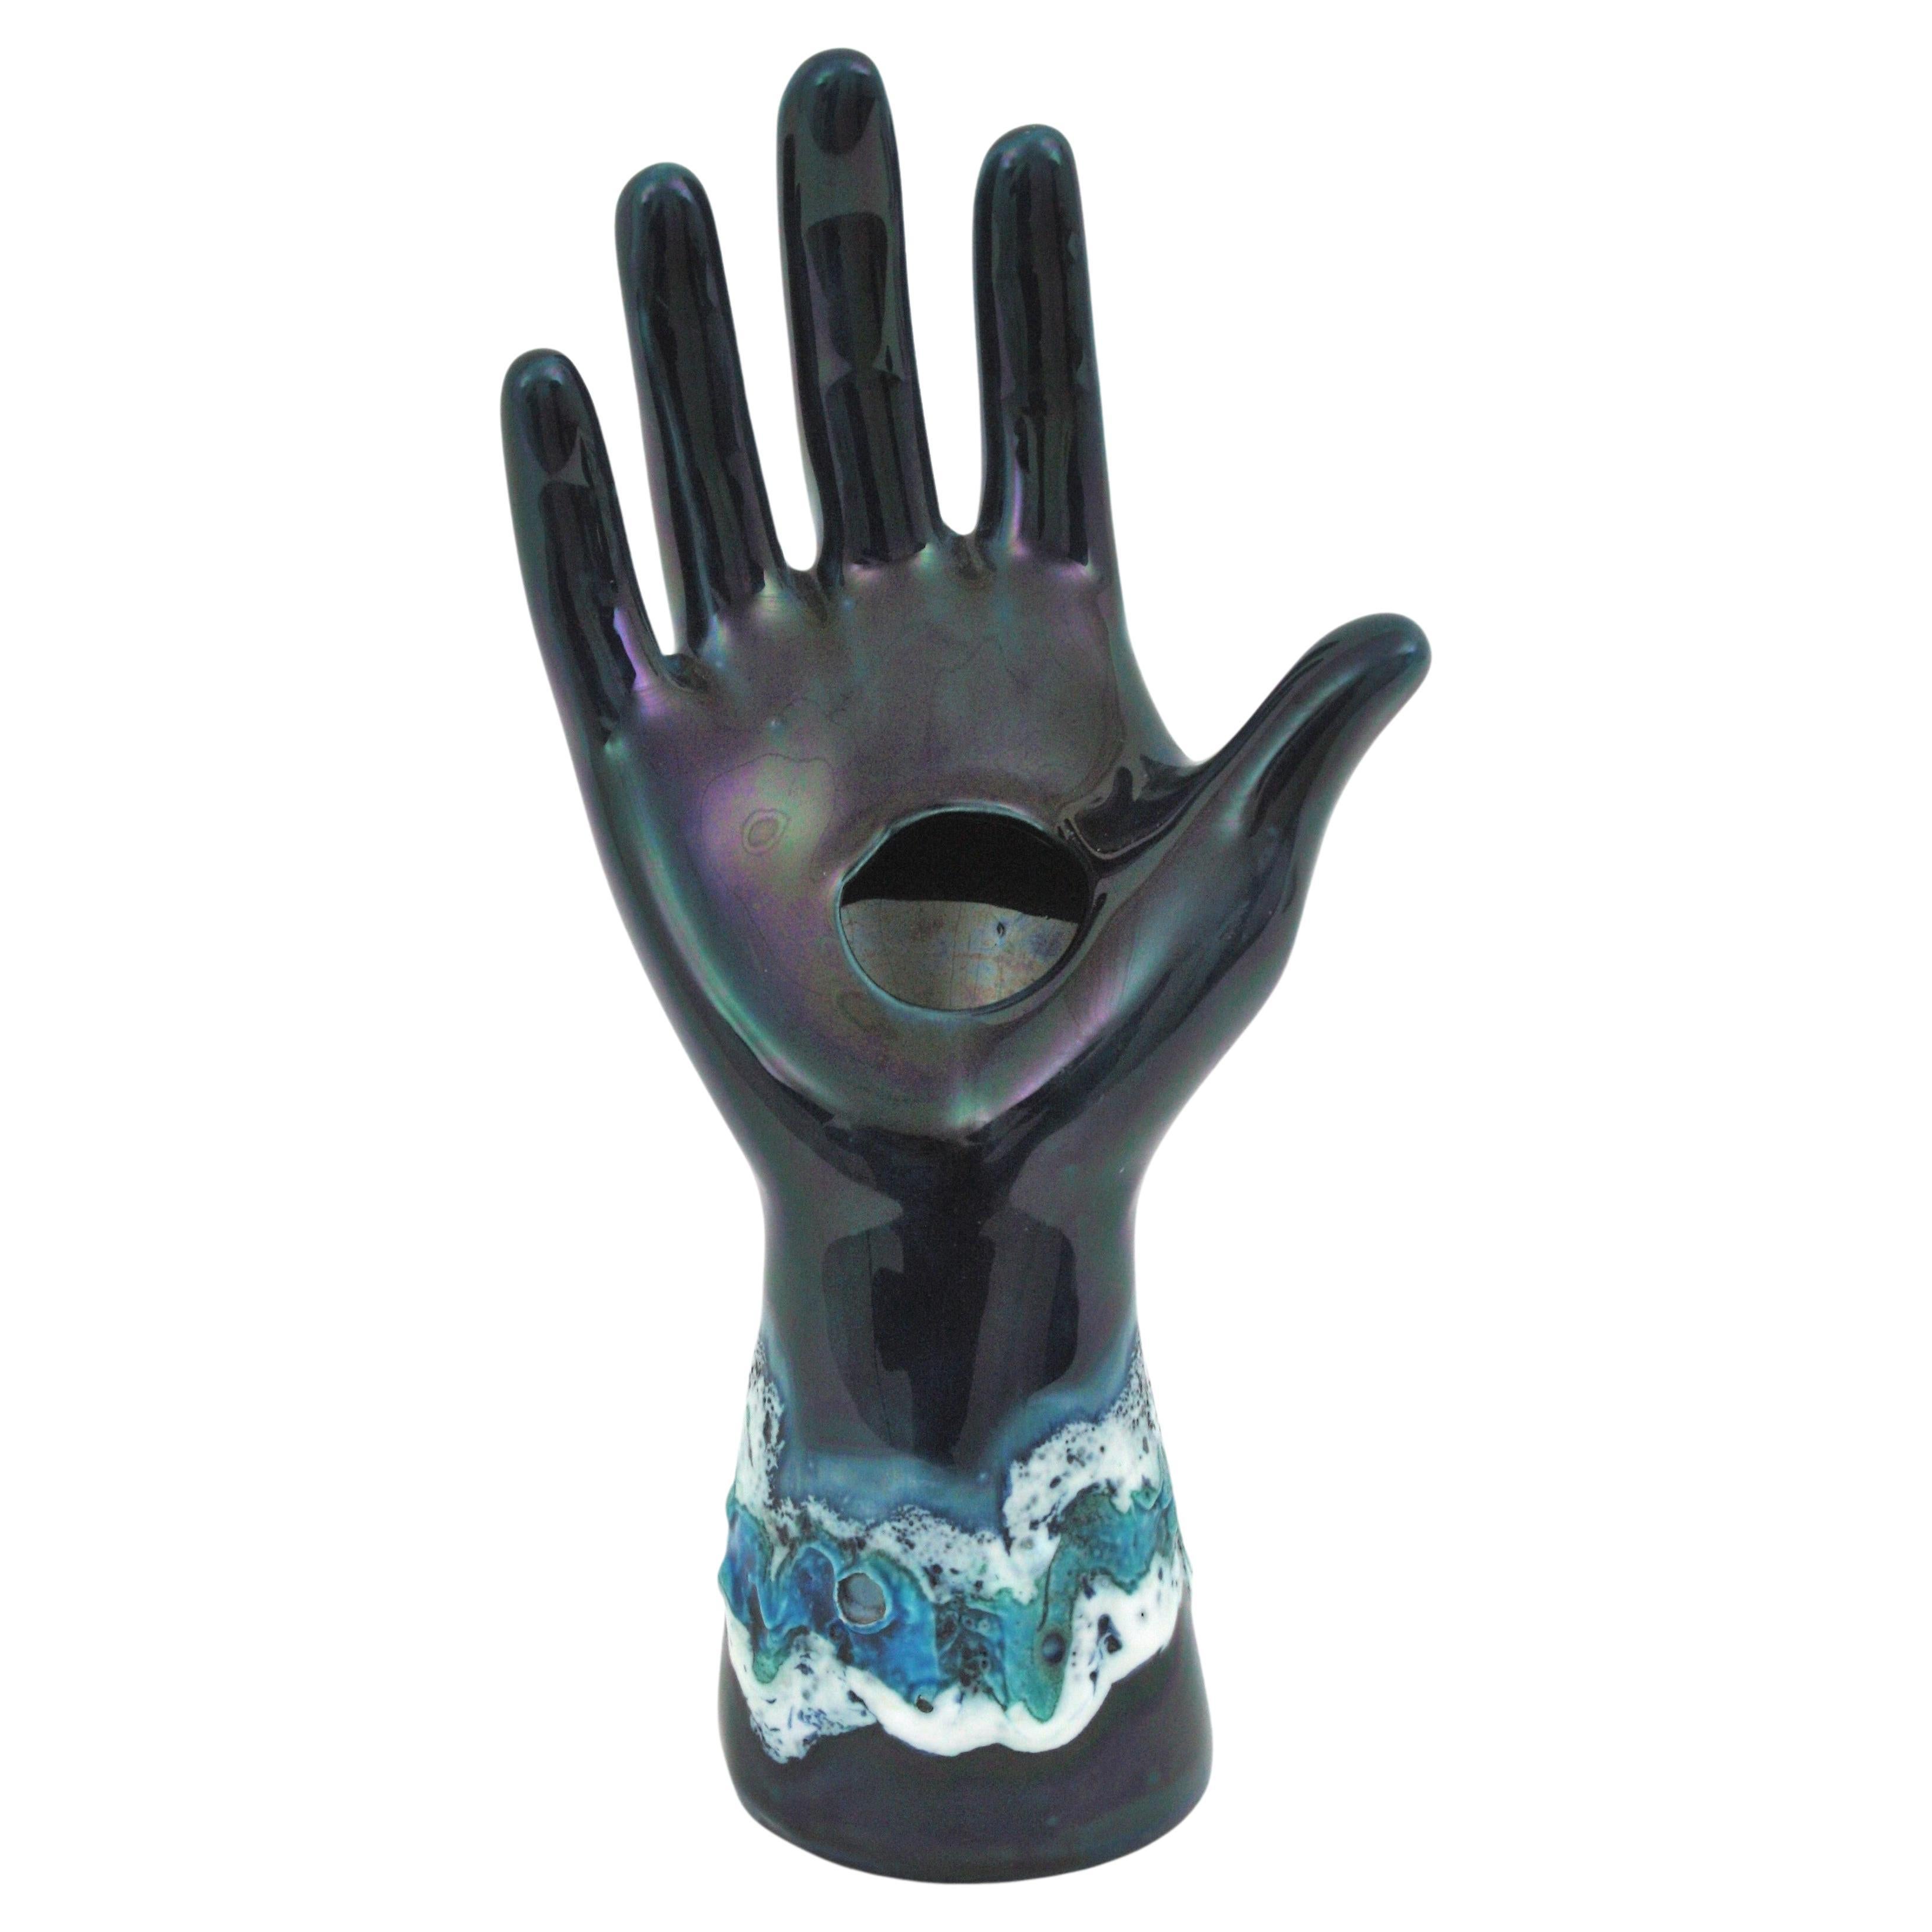 Sculpture à main en céramique émaillée bleue du milieu du siècle par Vallauris. France, années 1950
Vase à main en céramique bleue irisée attirant le regard, avec des détails de lave grasse dans des tons de céramique émaillée bleue et